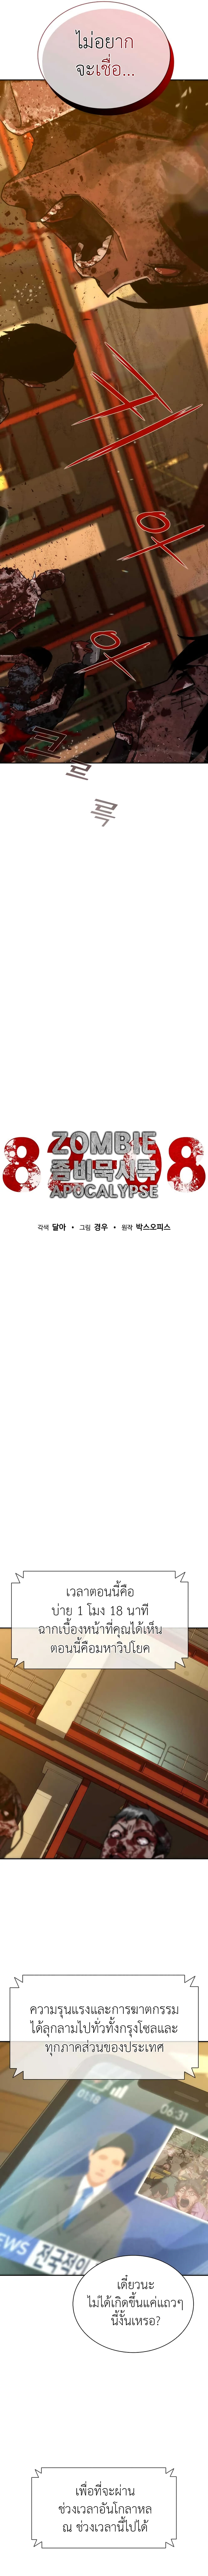 Zombie Apocalypse 82-08 12-12